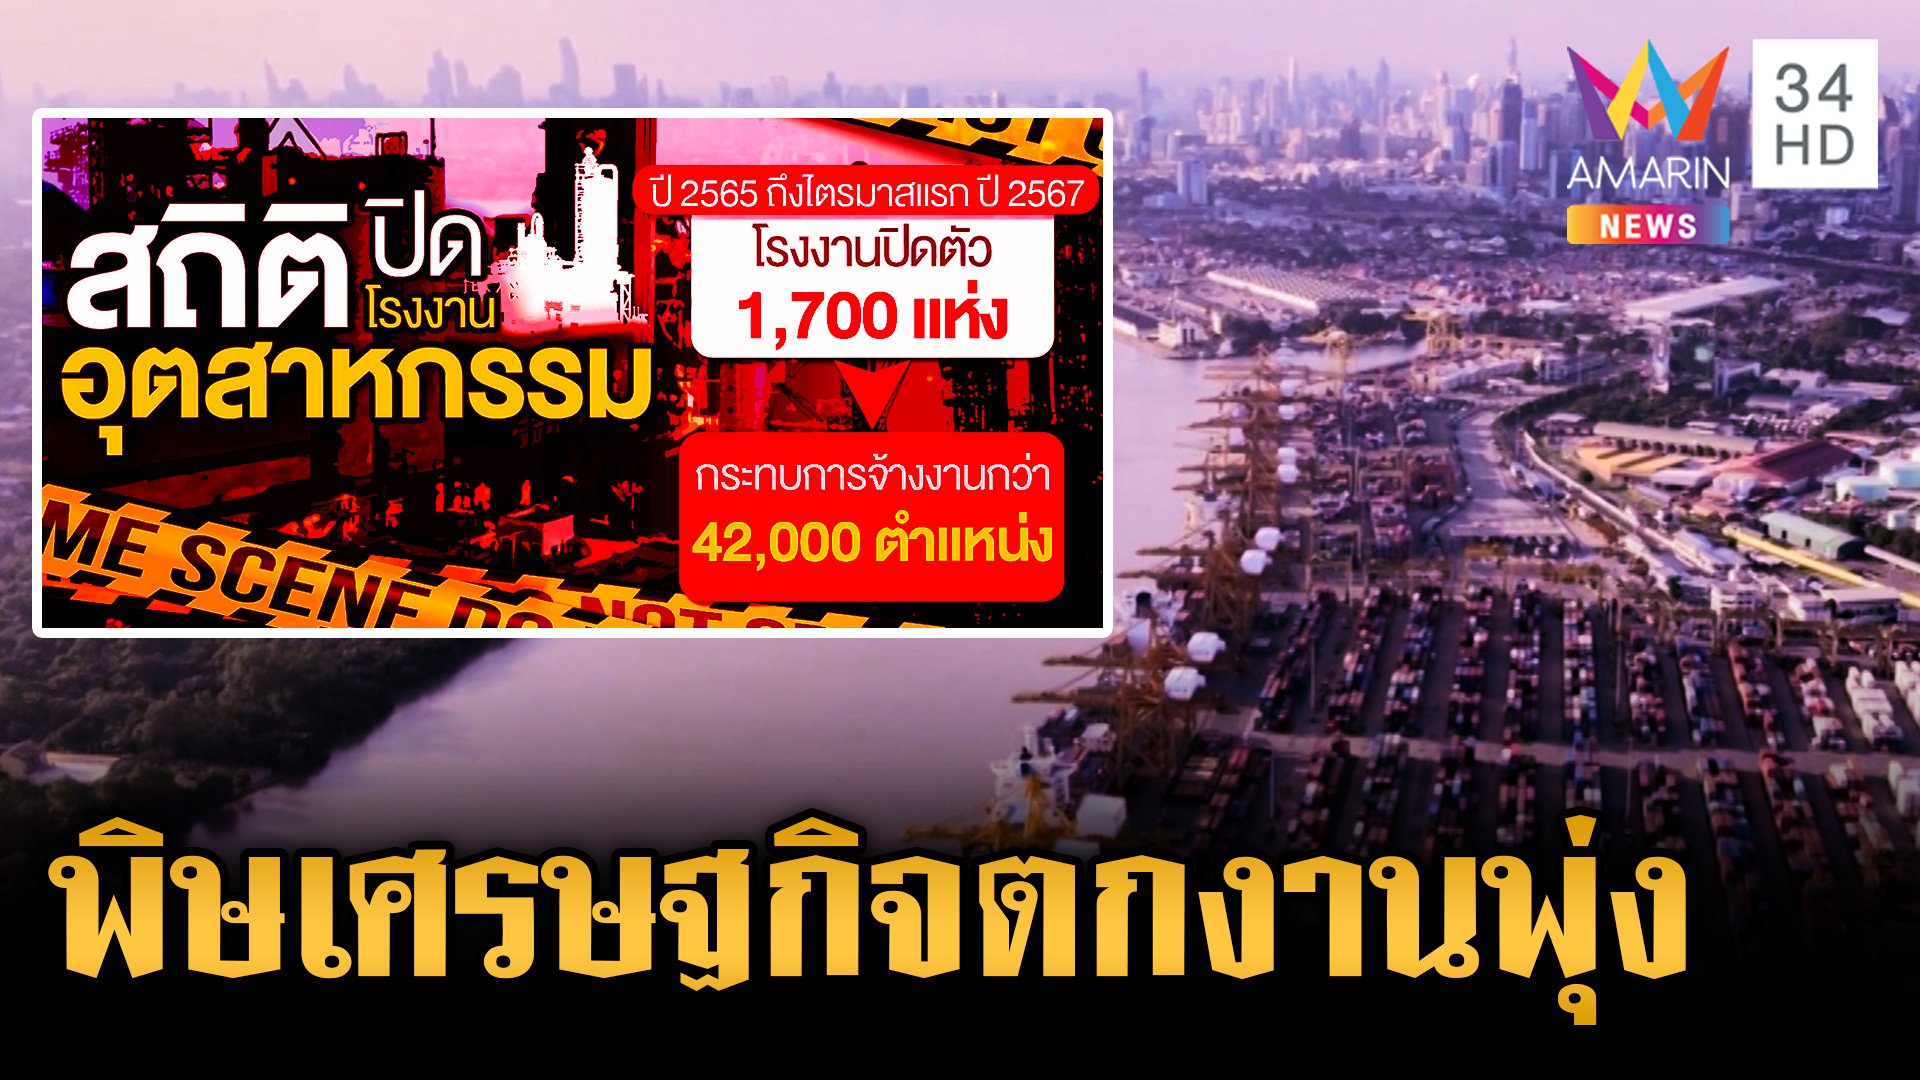 พิษเศรษฐกิจบาน! โรงงานแห่ปิดตัว คนตกงานพุ่งกว่า 42,000 ราย | ข่าวเย็นอมรินทร์ | 11 มิ.ย. 67 | AMARIN TVHD34